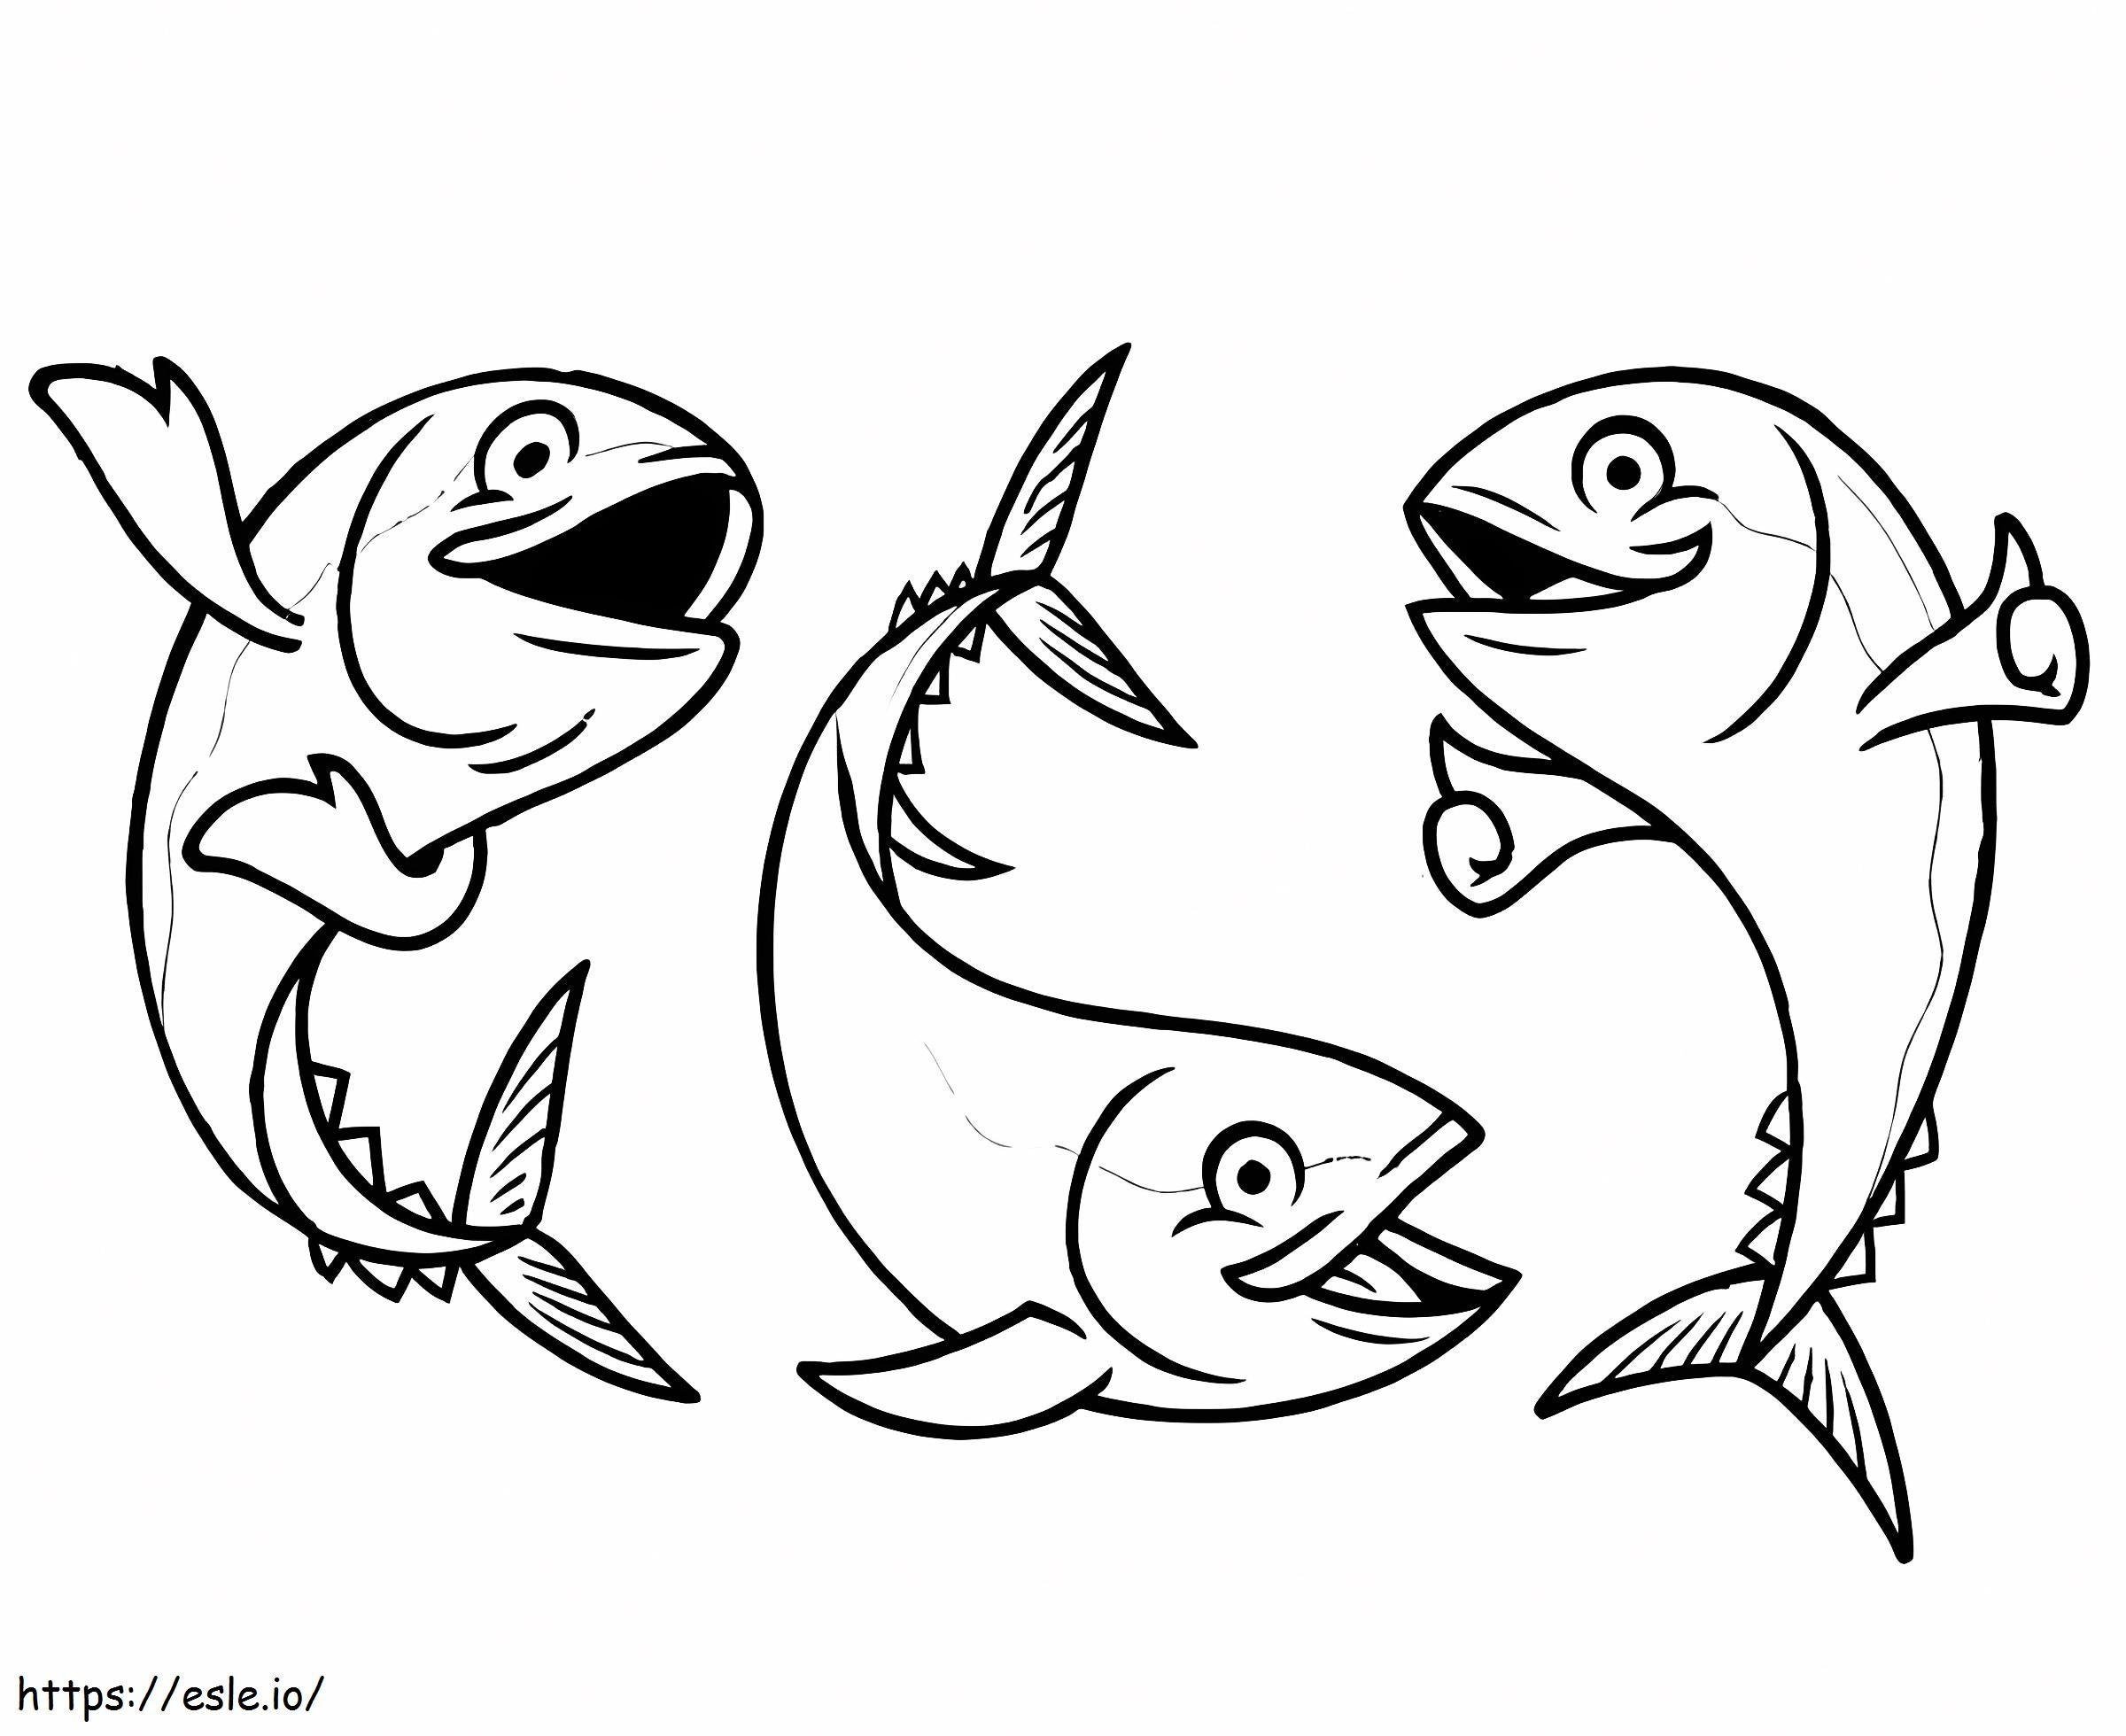 Drei Thunfische ausmalbilder